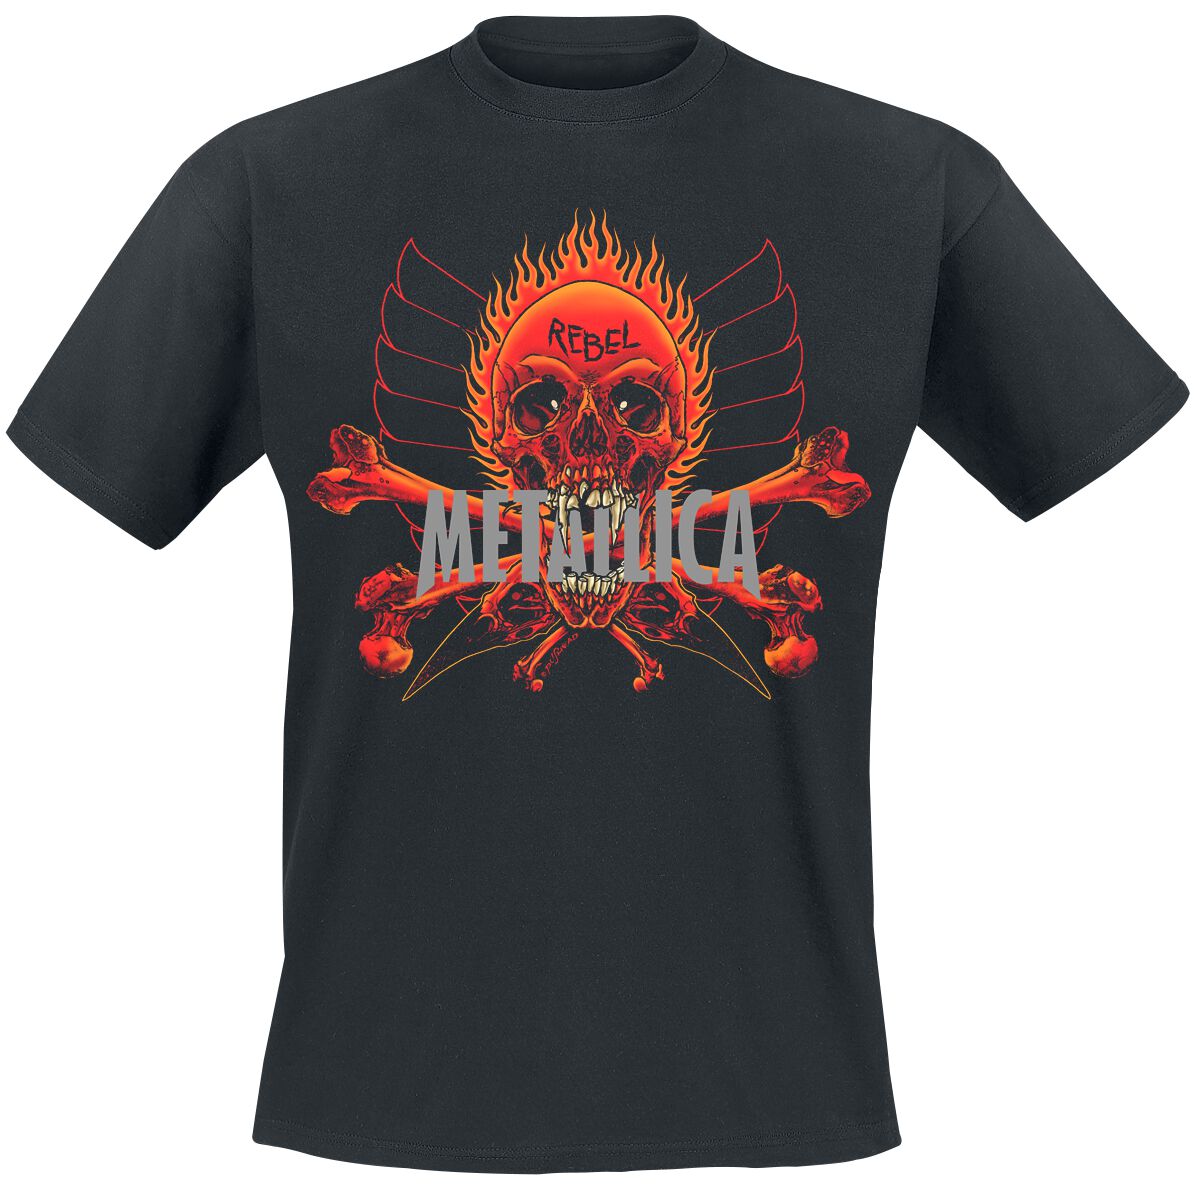 Metallica T-Shirt - Rebel - S bis XL - für Männer - Größe M - schwarz  - Lizenziertes Merchandise!